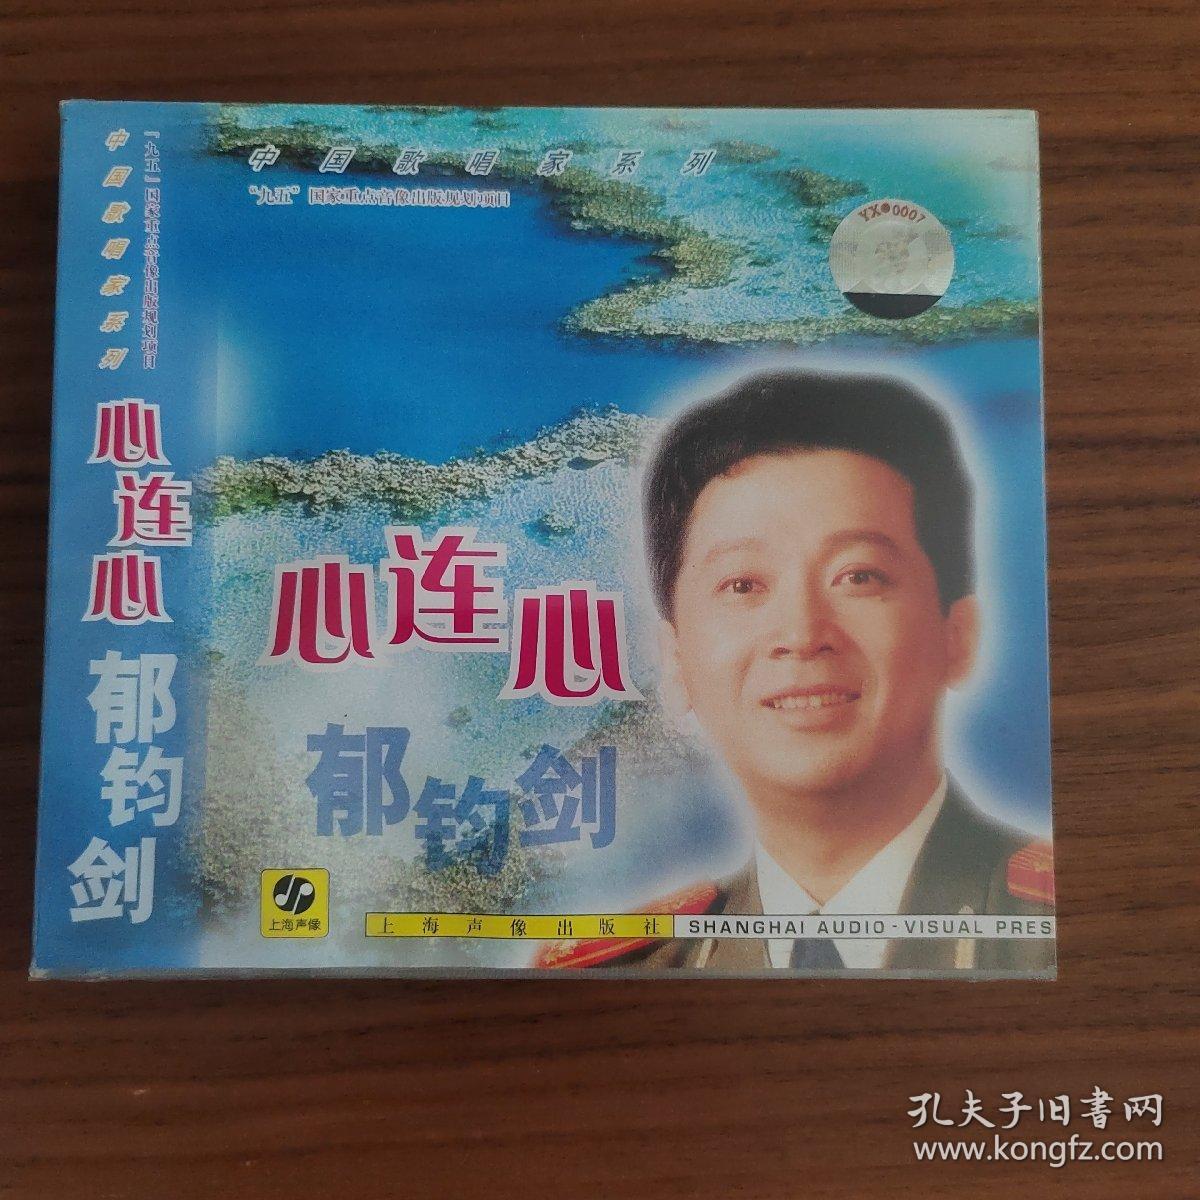 郁钧剑 心连心 中国歌唱家系列 上海声像全新正版CD光盘